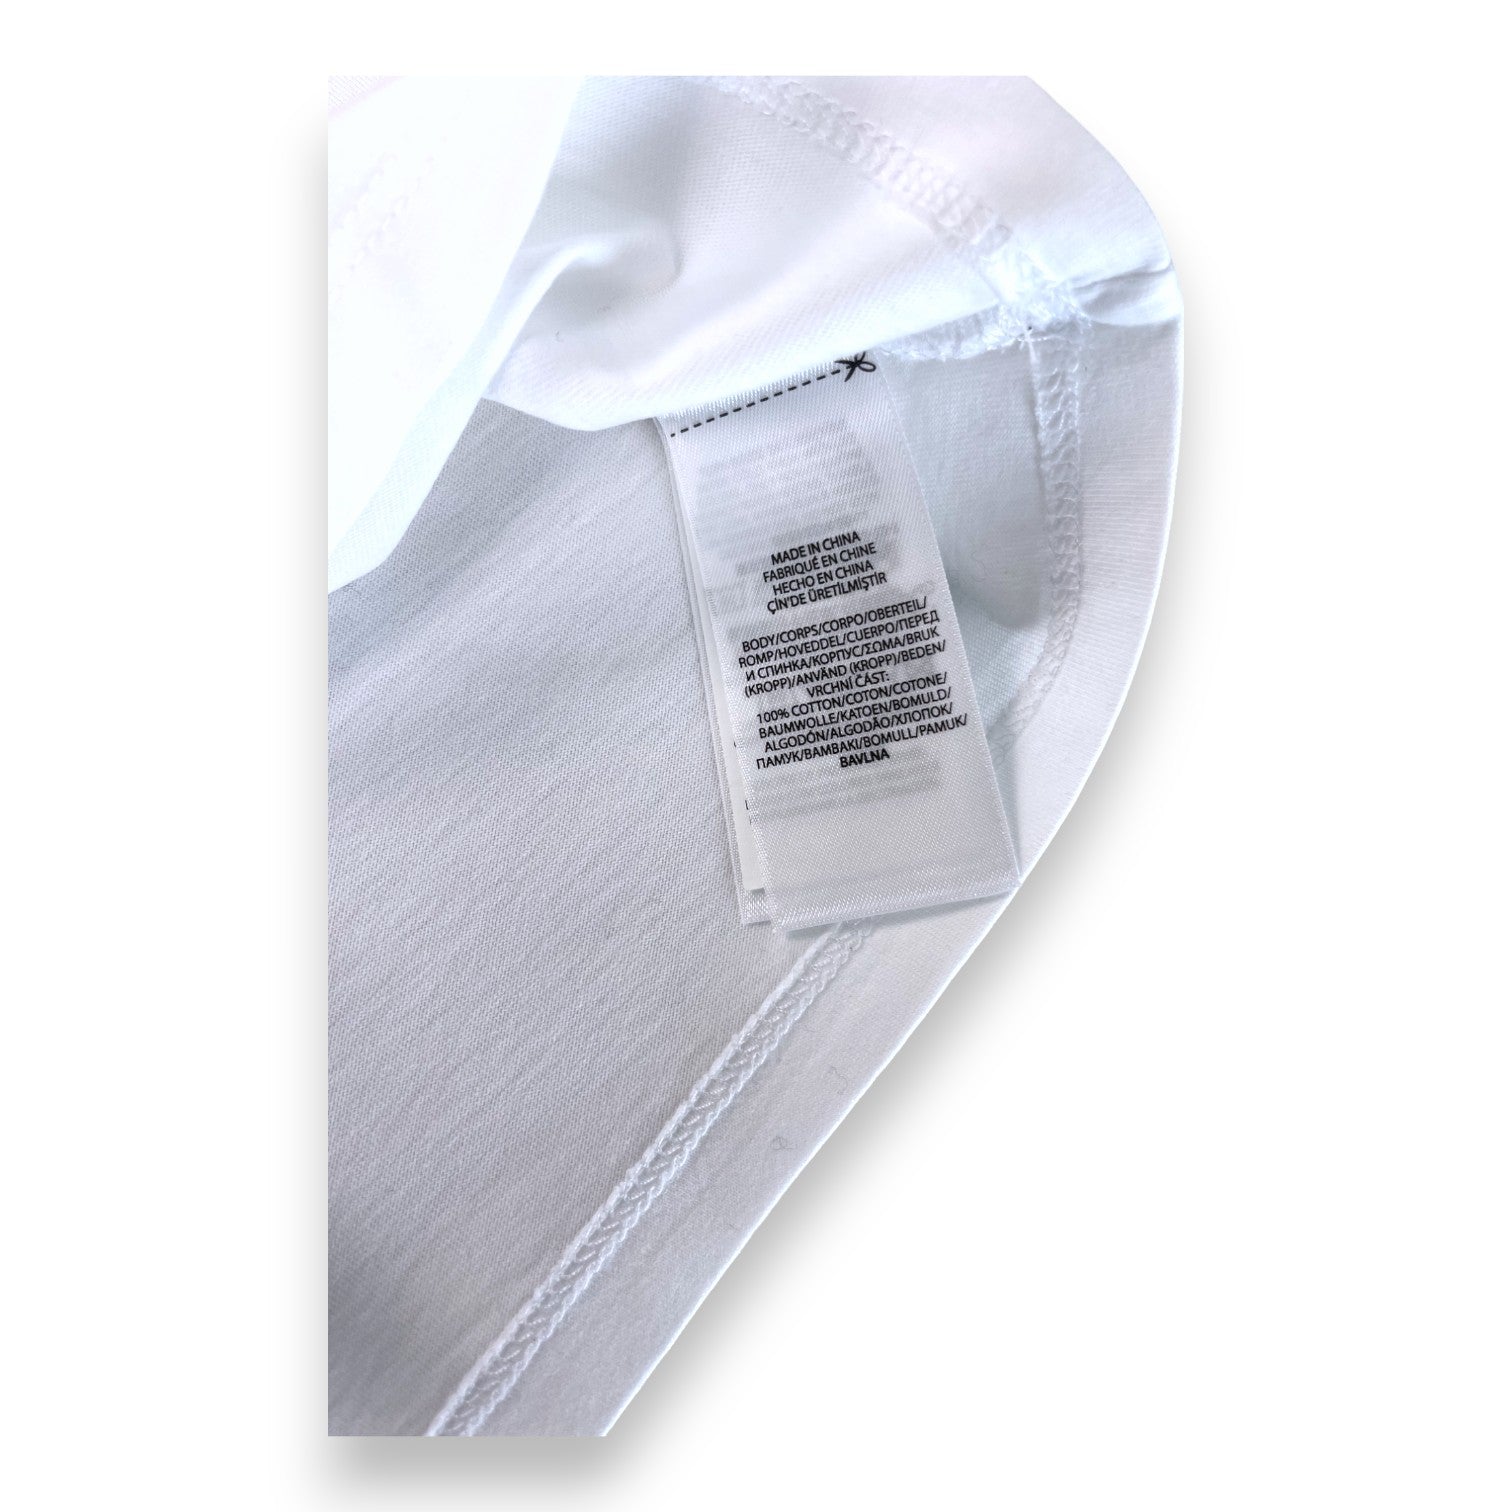 RALPH LAUREN - T shirt blanc polo bear - 9 mois